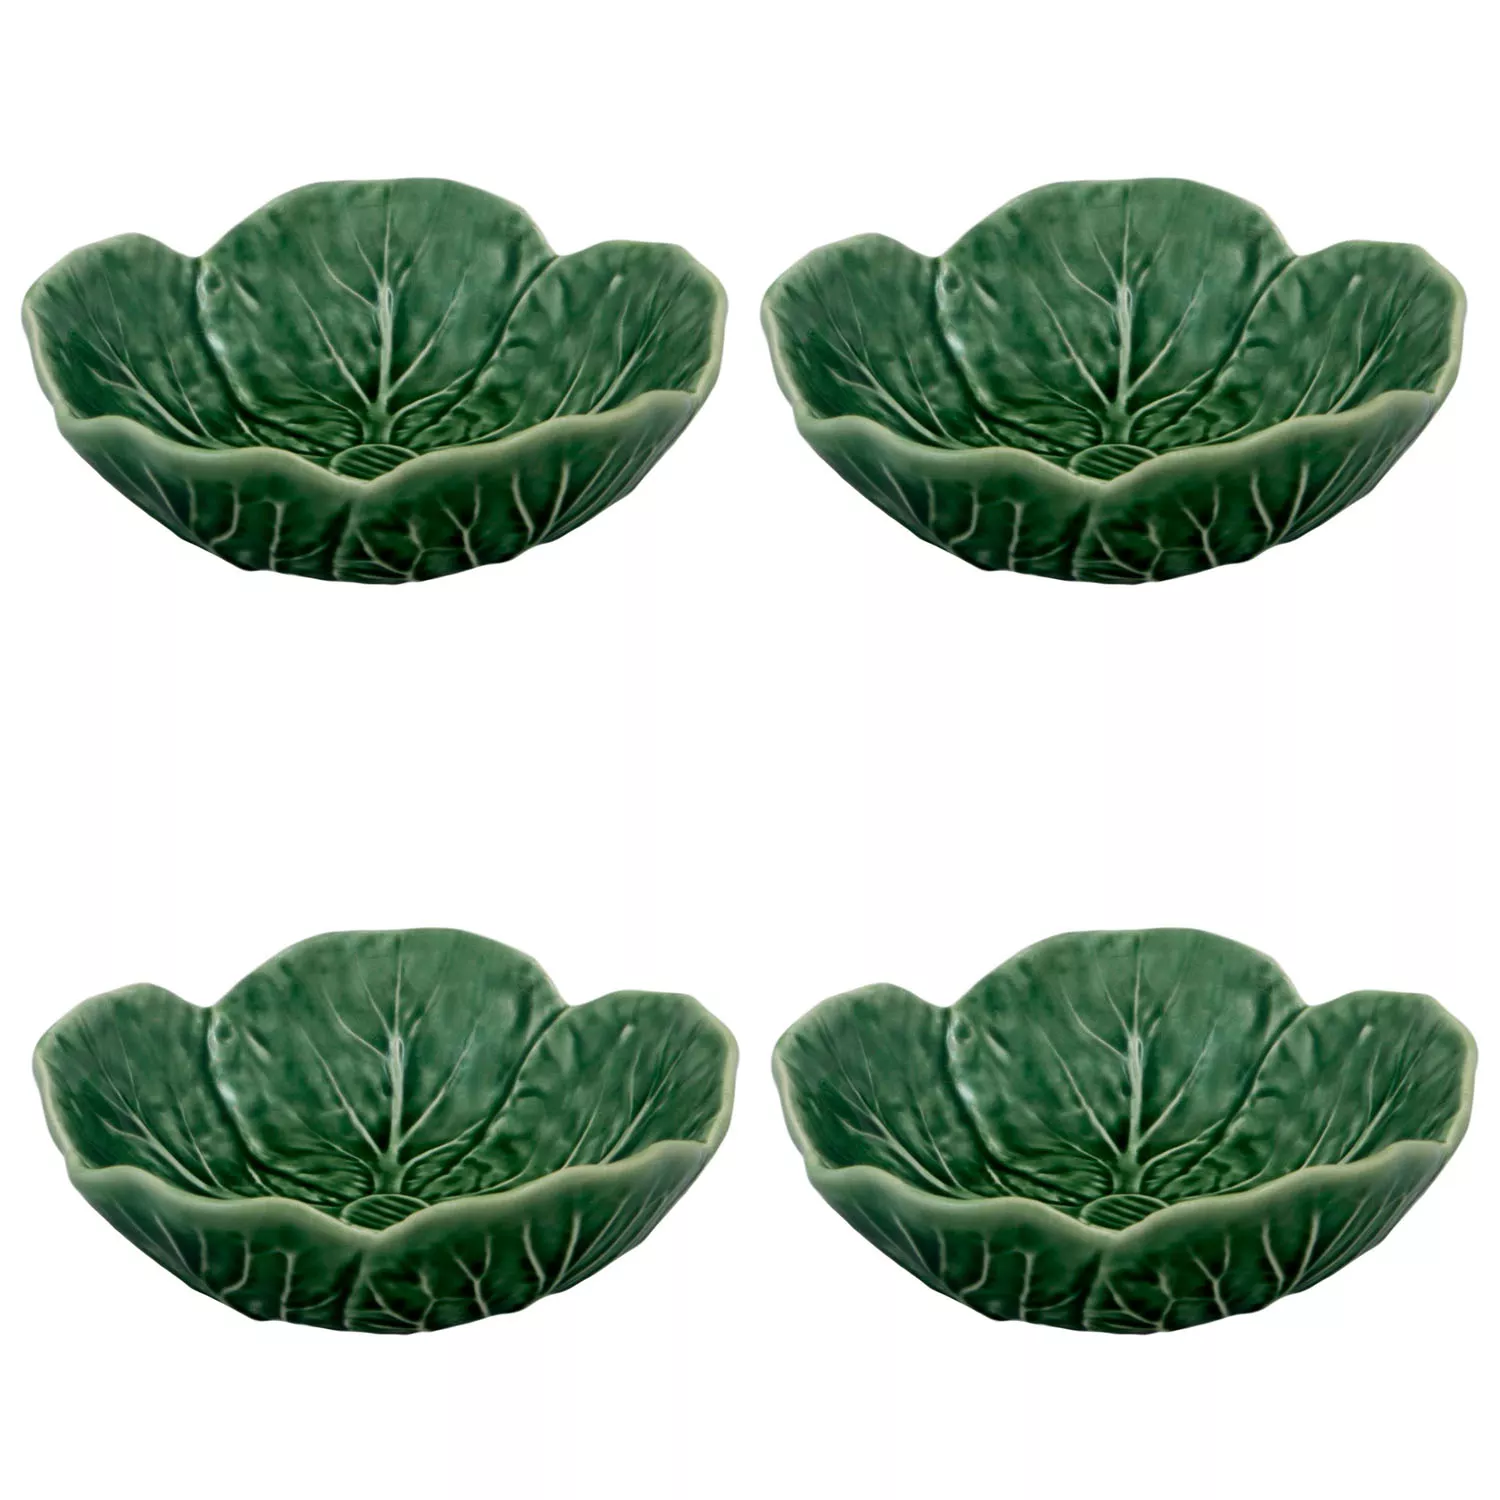 Bordallo Pinheiro Cabbage Green Bowls, Set of 4